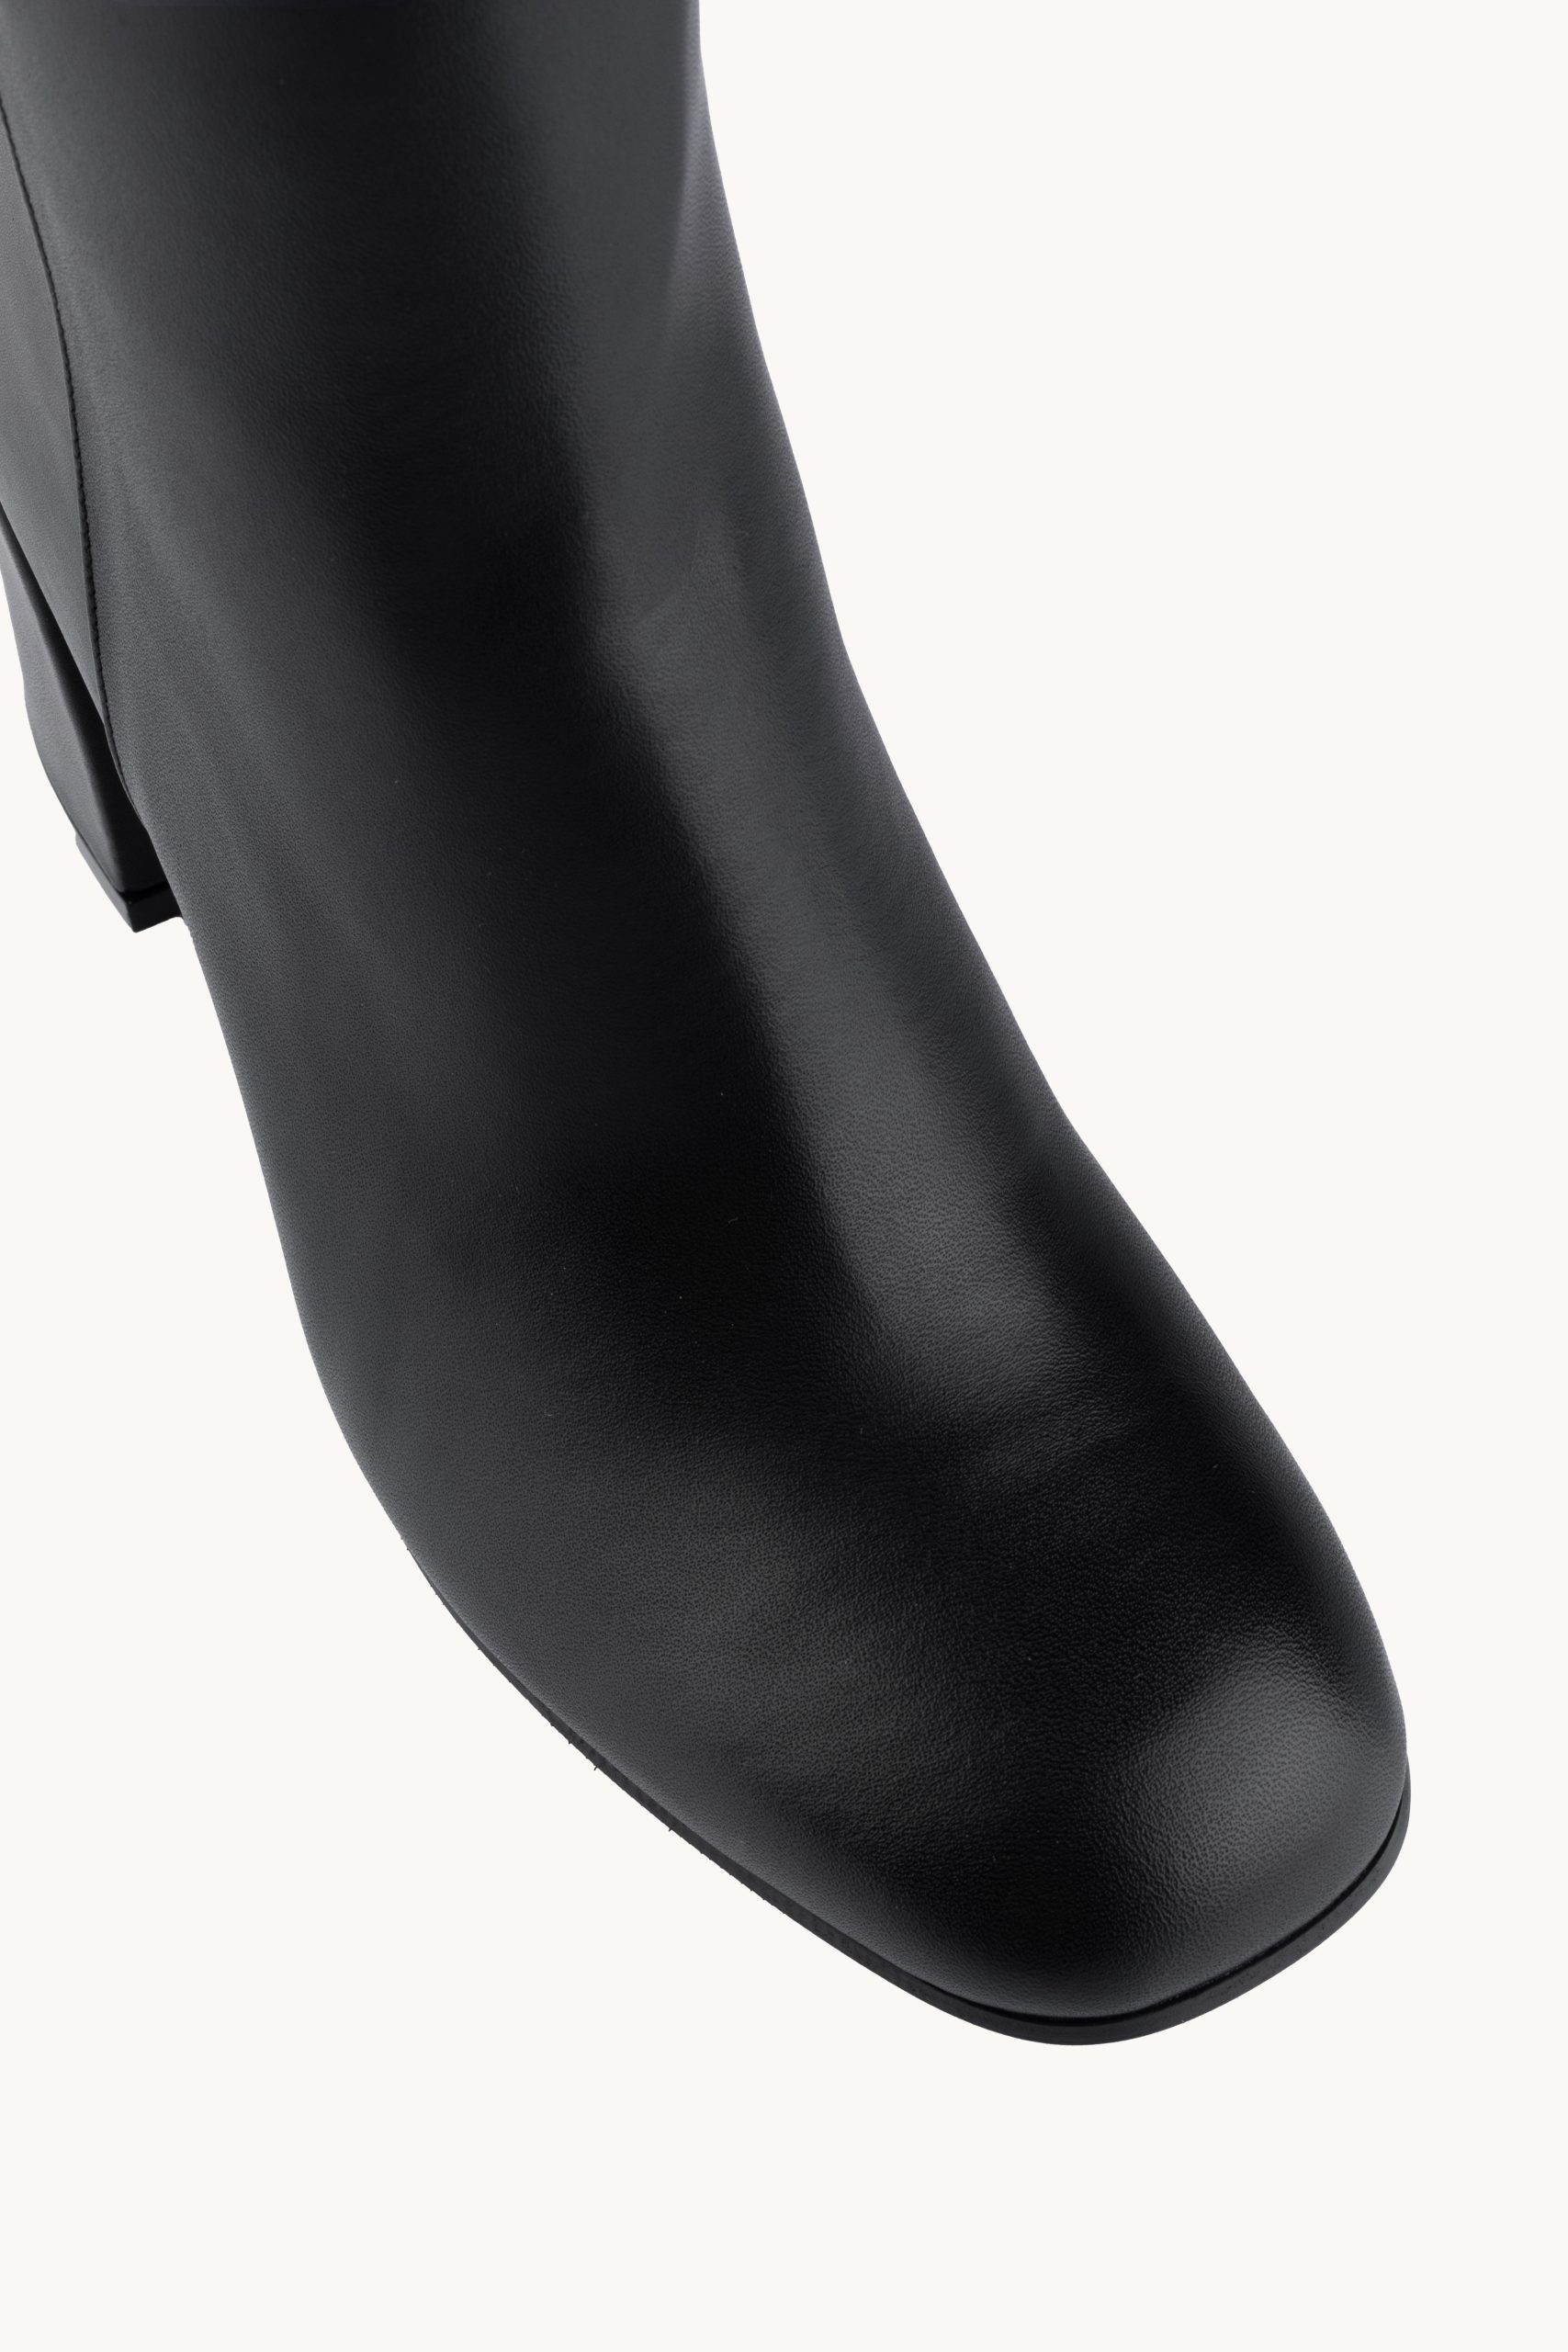 Kratke čizme - Short Comfort su udobne kratke crne čizme do članka od prirodne kože sa četvrtastom petom i četvtastim vrhom.